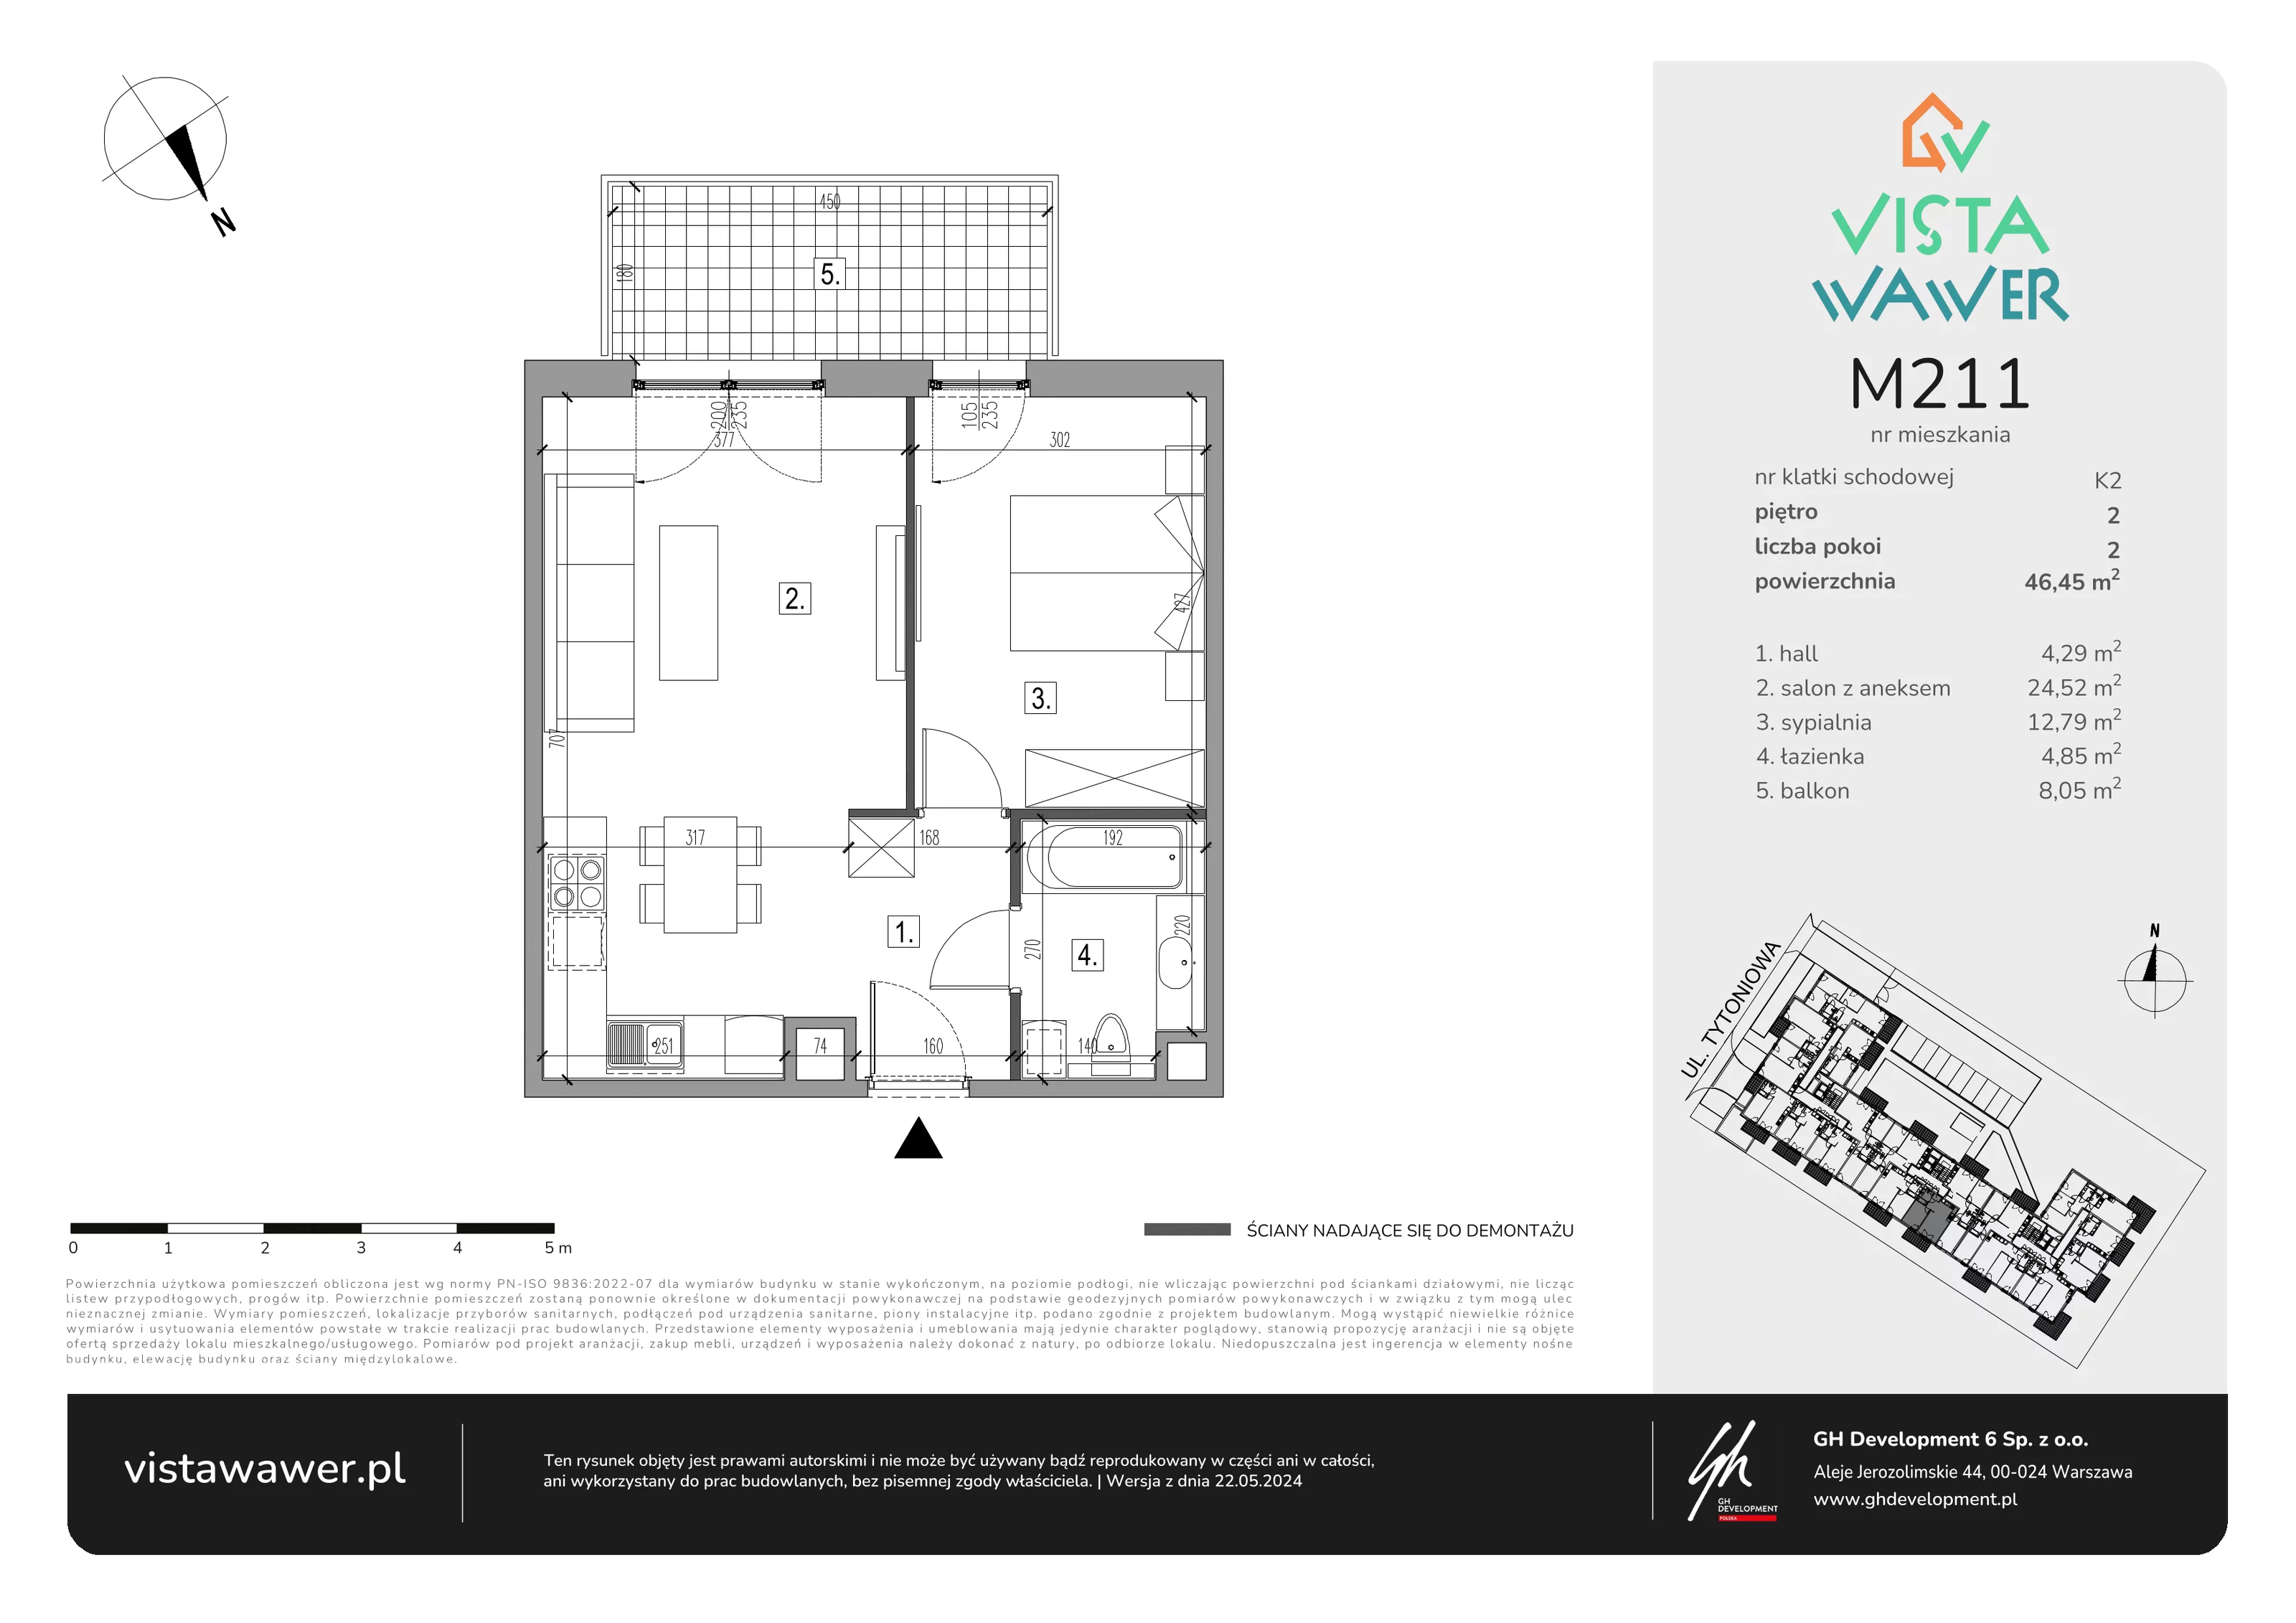 Mieszkanie 46,45 m², piętro 2, oferta nr M211, Vista Wawer, Warszawa, Wawer, Gocławek, ul. Tytoniowa 20